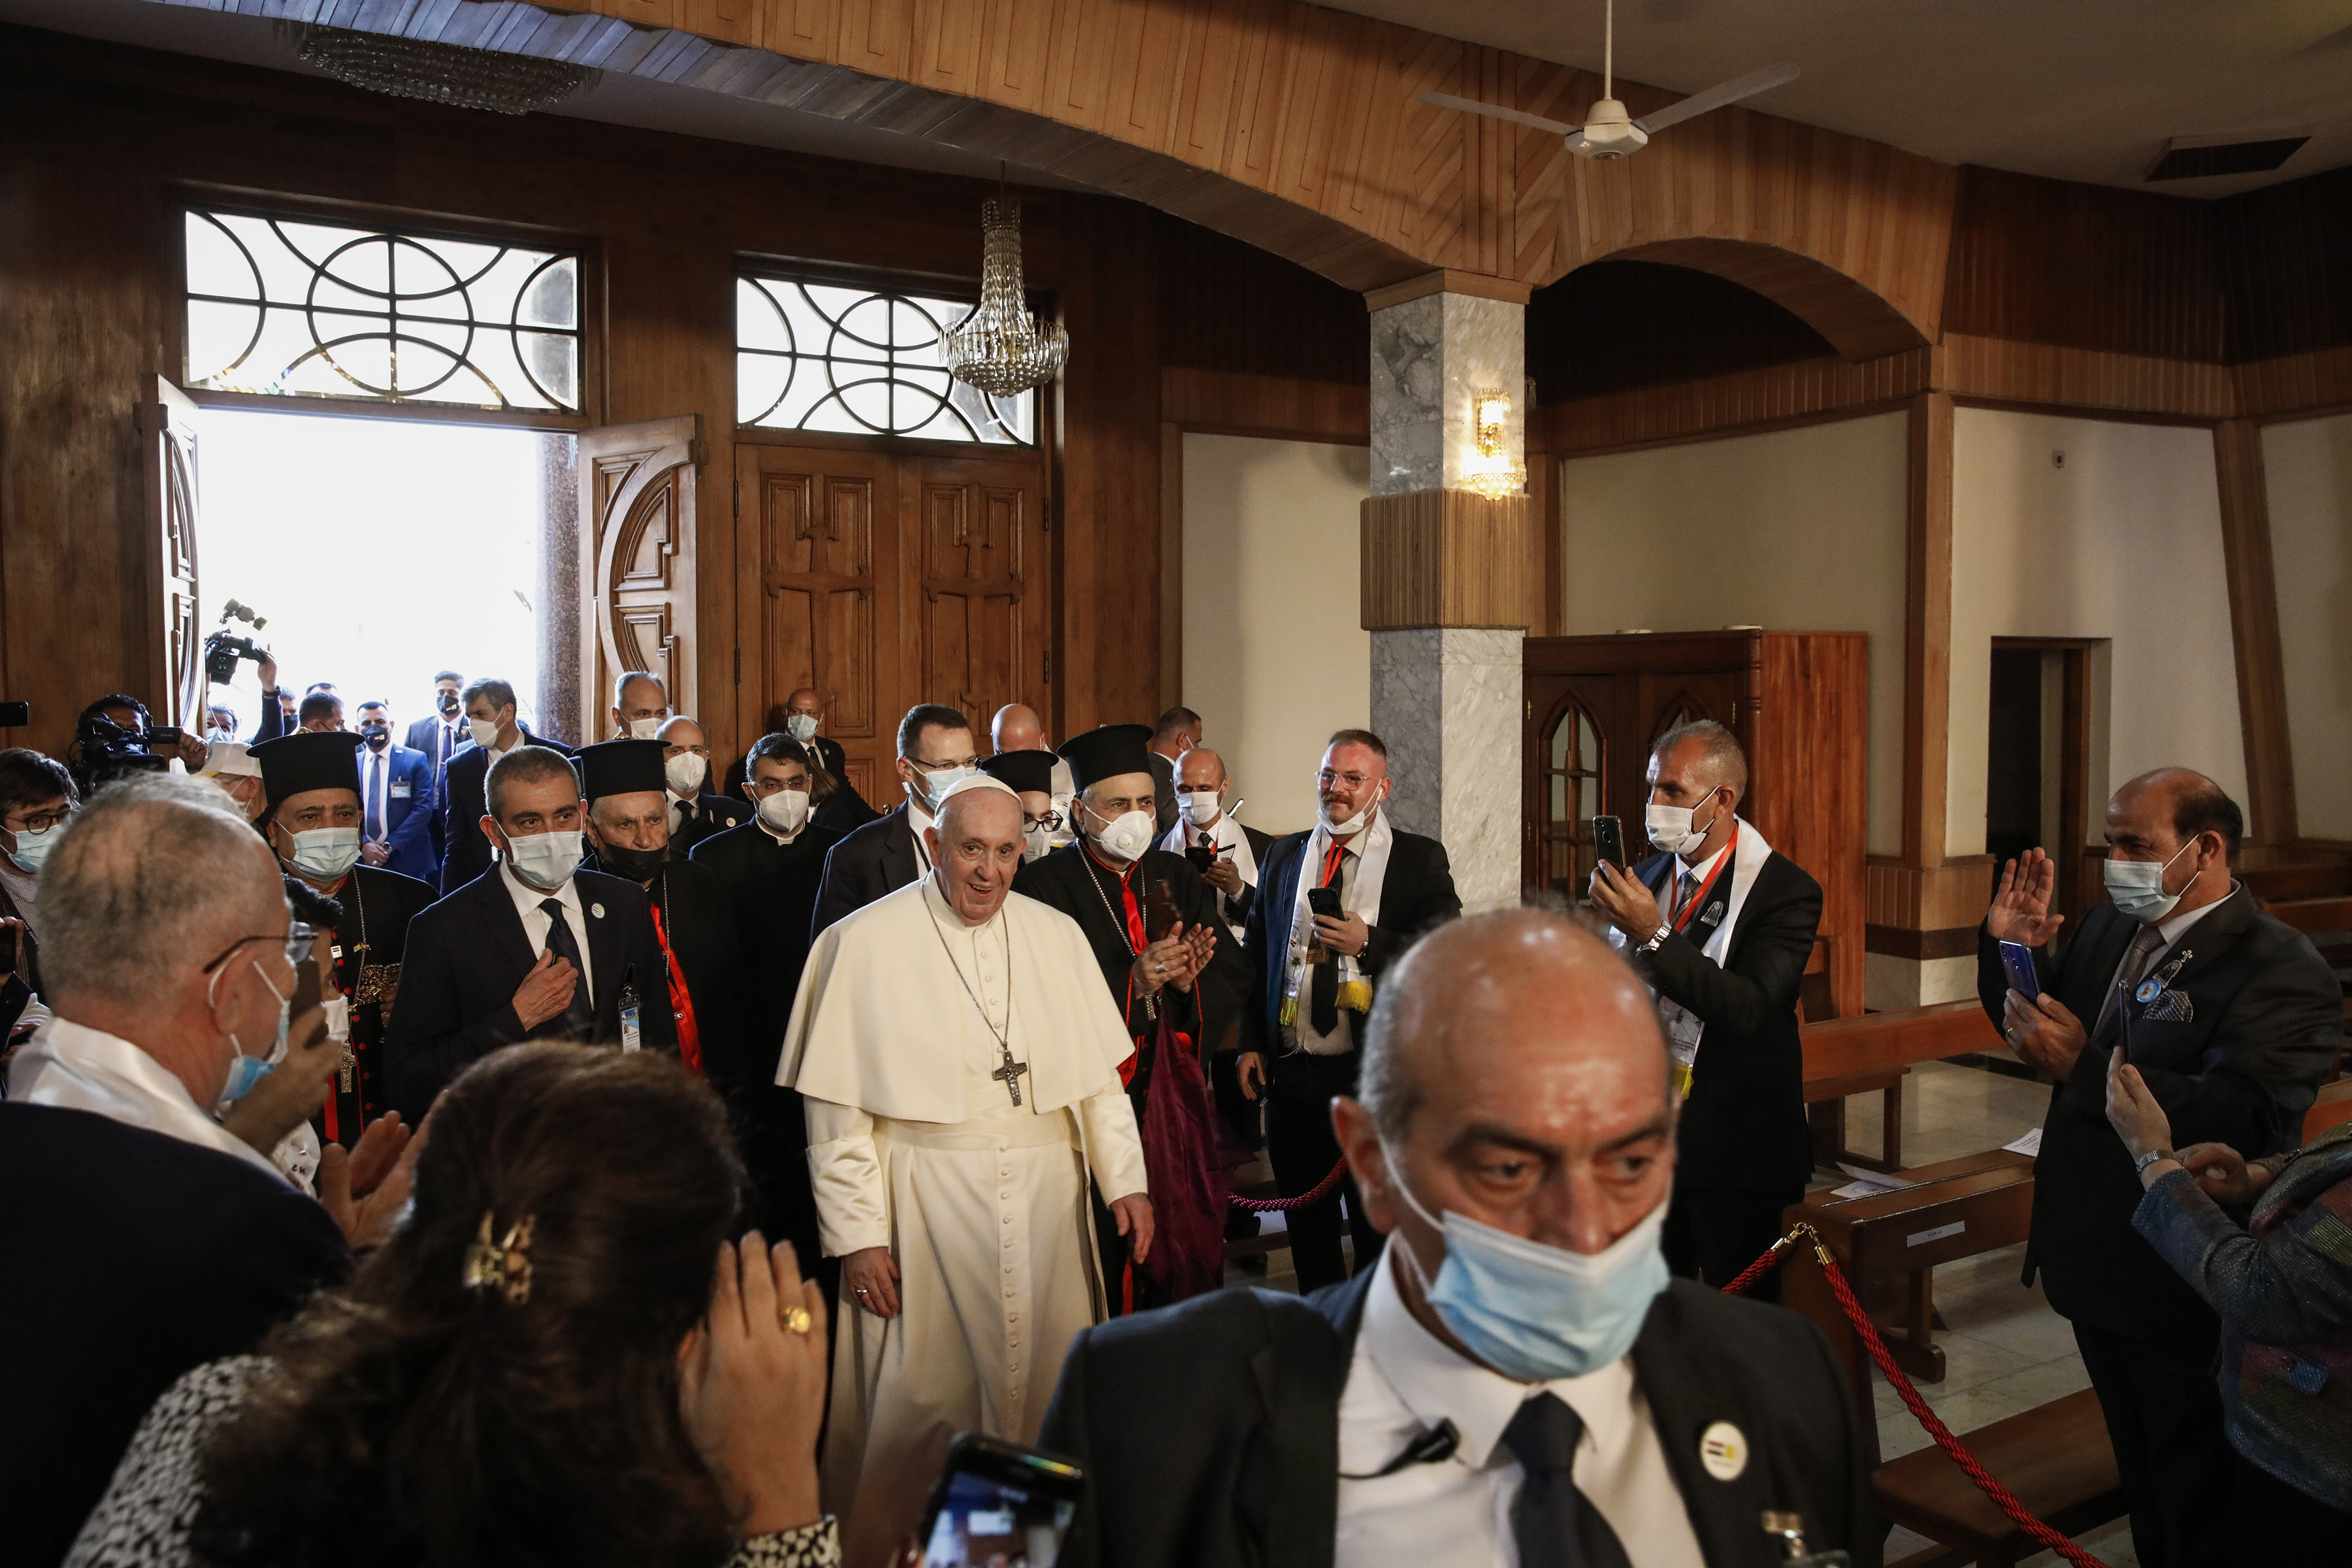 El Papa Francisco llega a la Iglesia de Nuestra Señora de la Salvación en Bagdad, el 5 de marzo de 2021. (Foto Prensa Libre: Ivor Prickett/The New York Times)